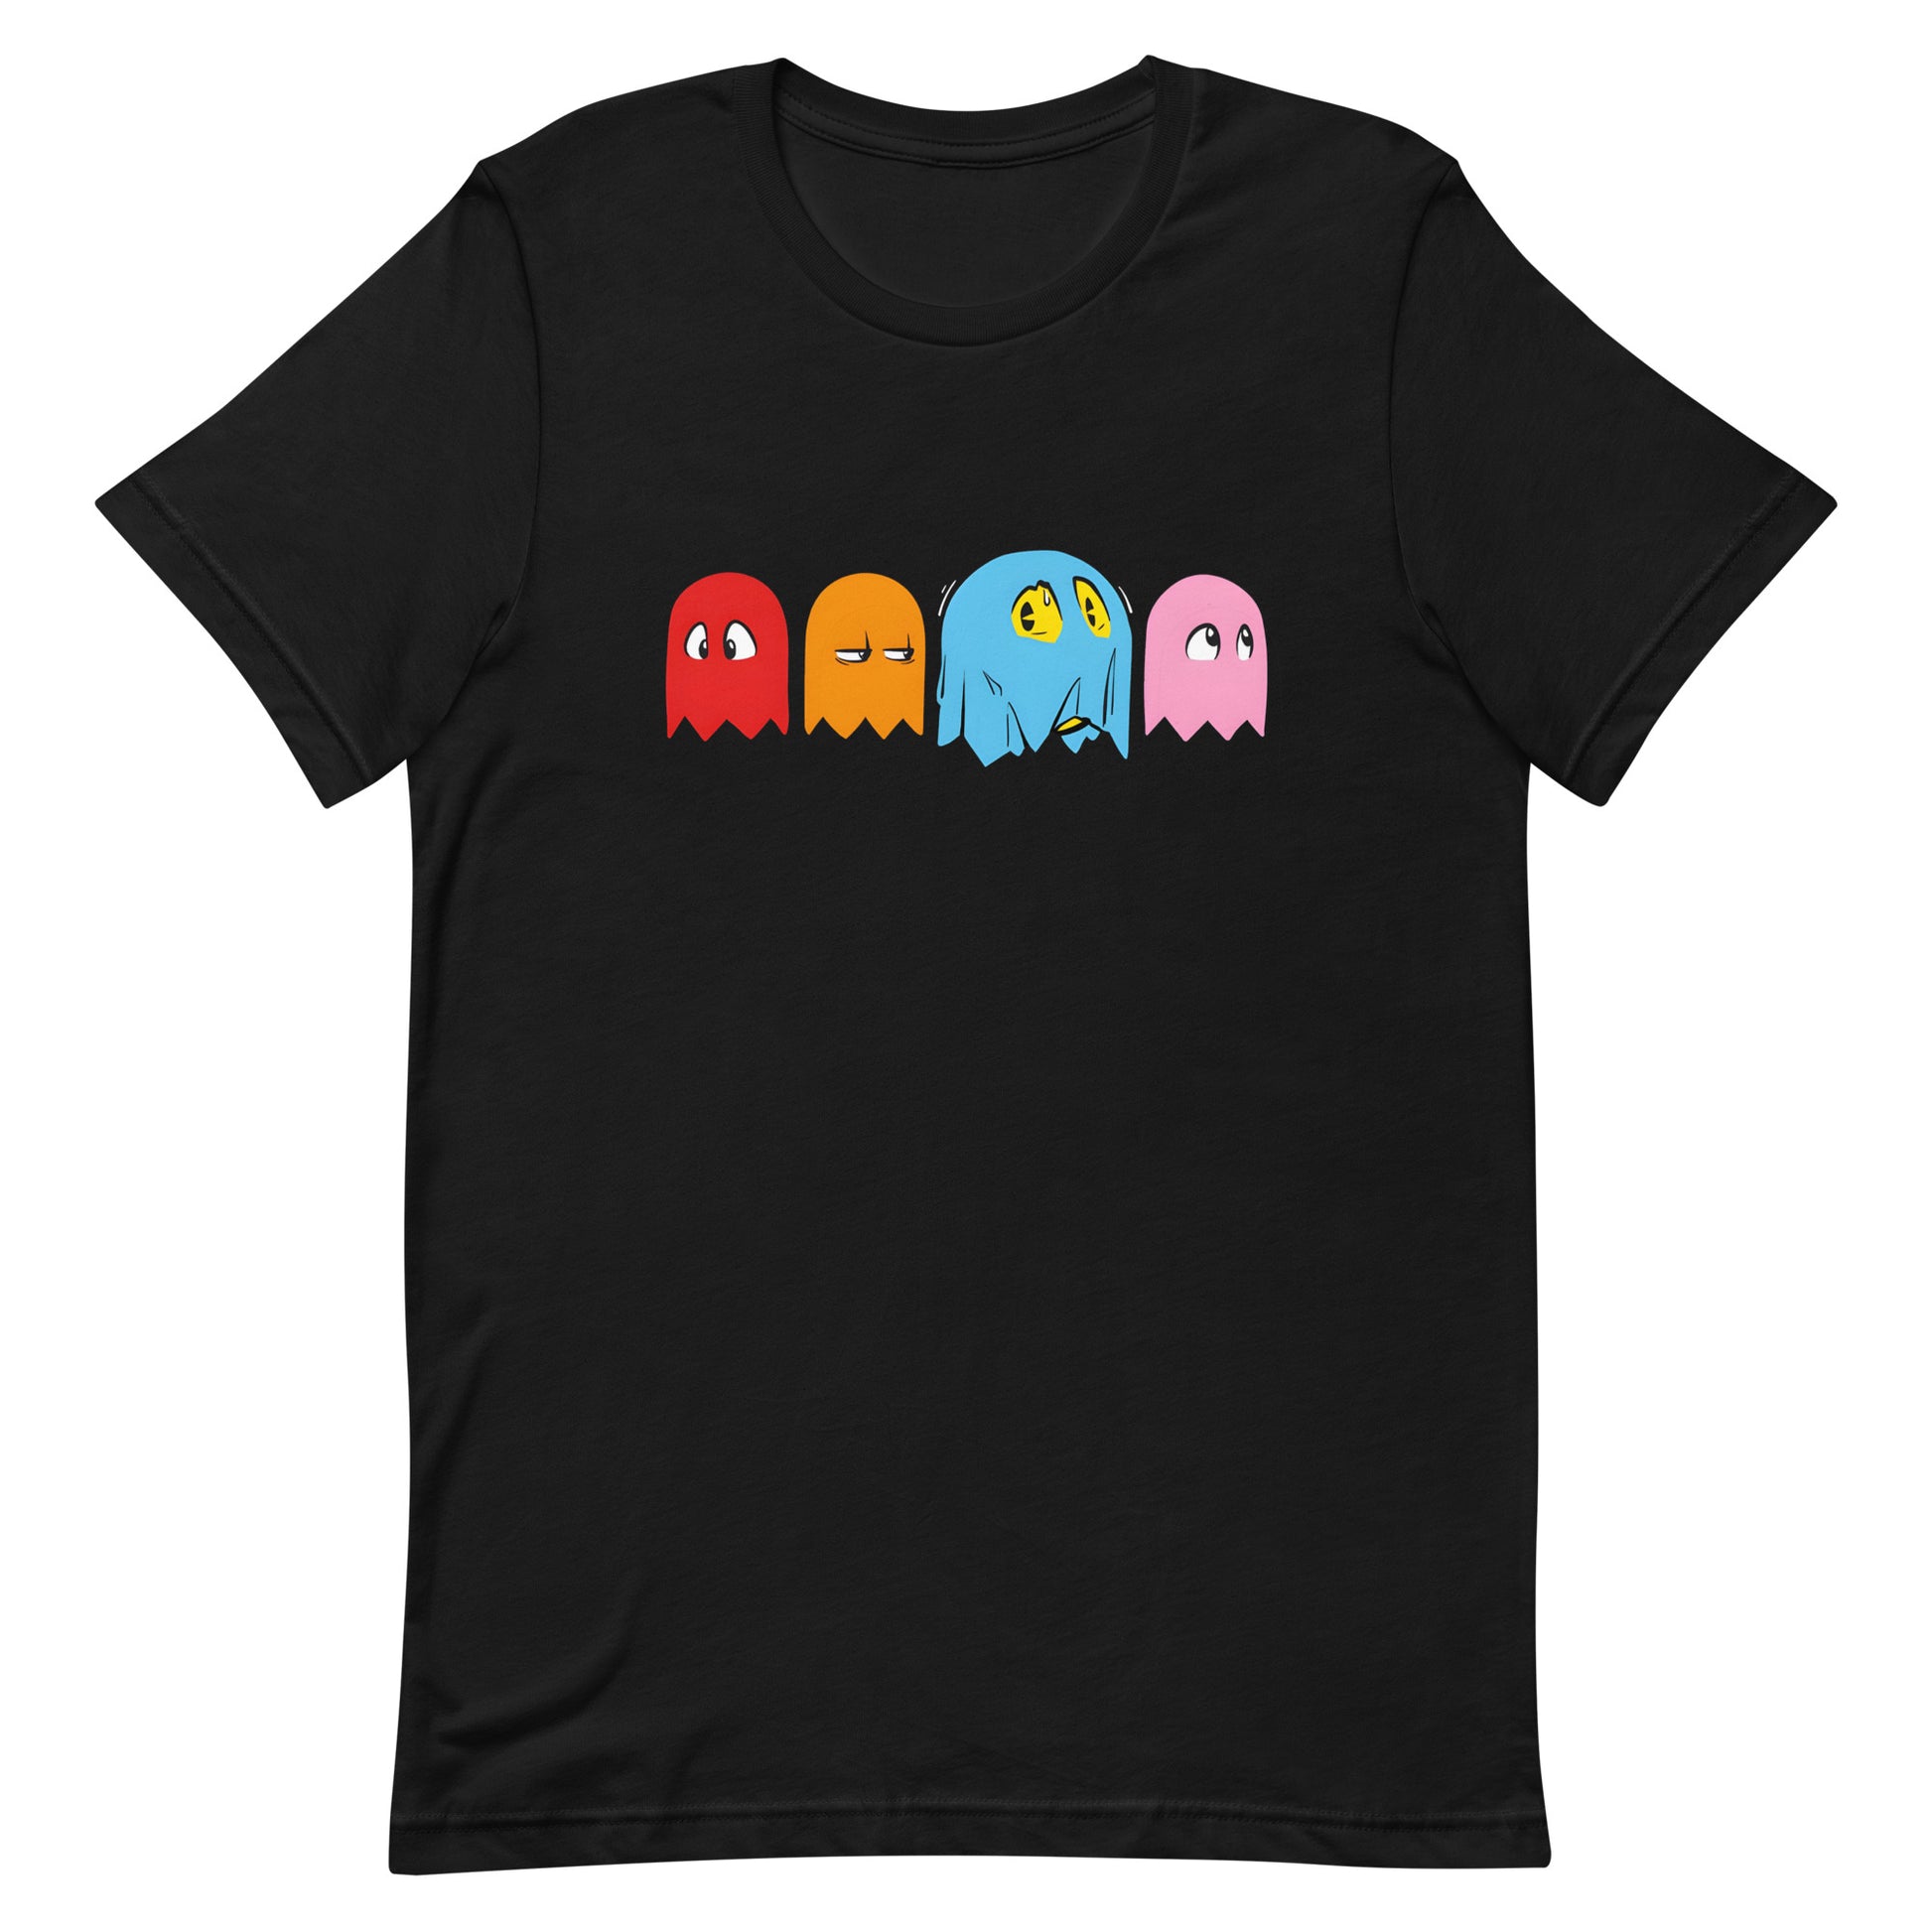 ¡Compra el mejor merchandising en Superstar! Encuentra diseños únicos y de alta calidad, Playera de Pac- Man Phantom